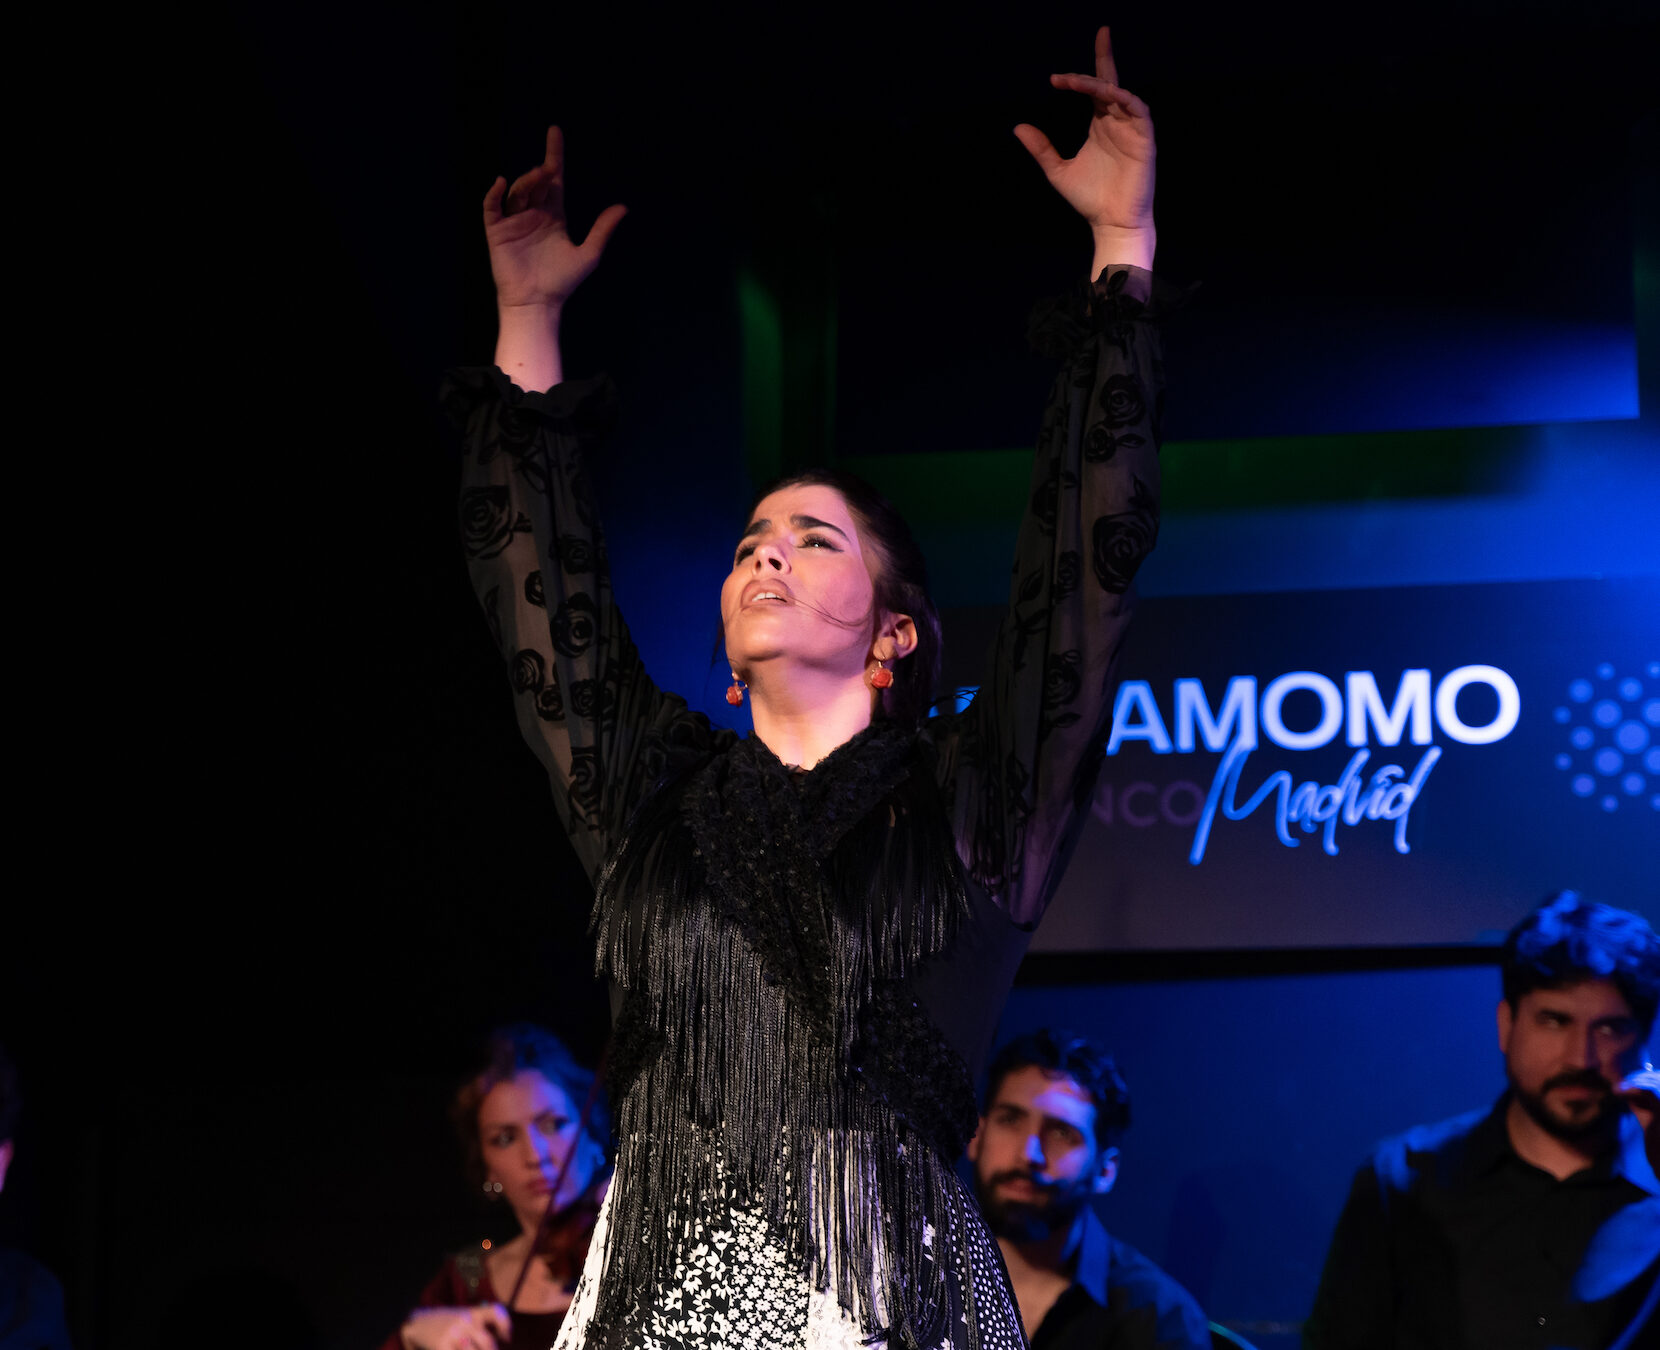 Consigue Entradas de Flamenco en Madrid: Descubre el alma de España en Cardamomo